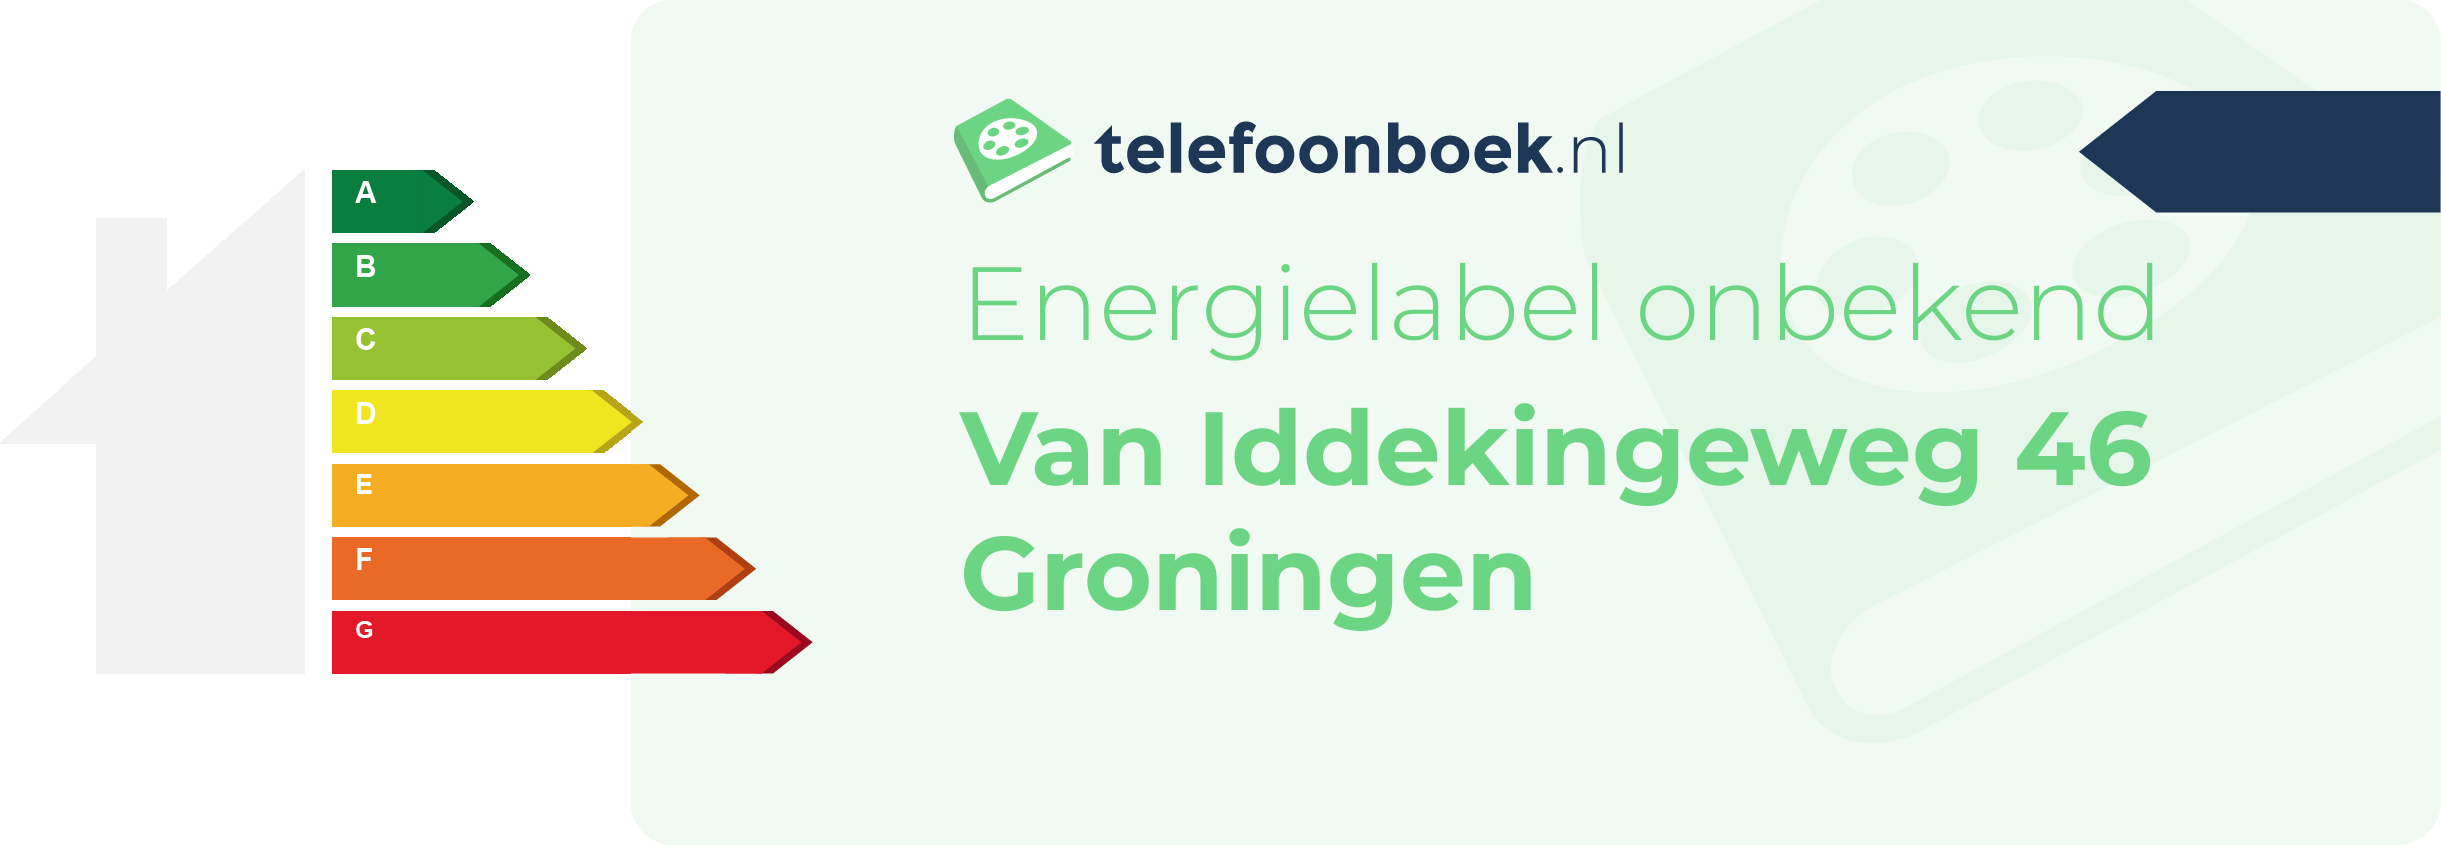 Energielabel Van Iddekingeweg 46 Groningen